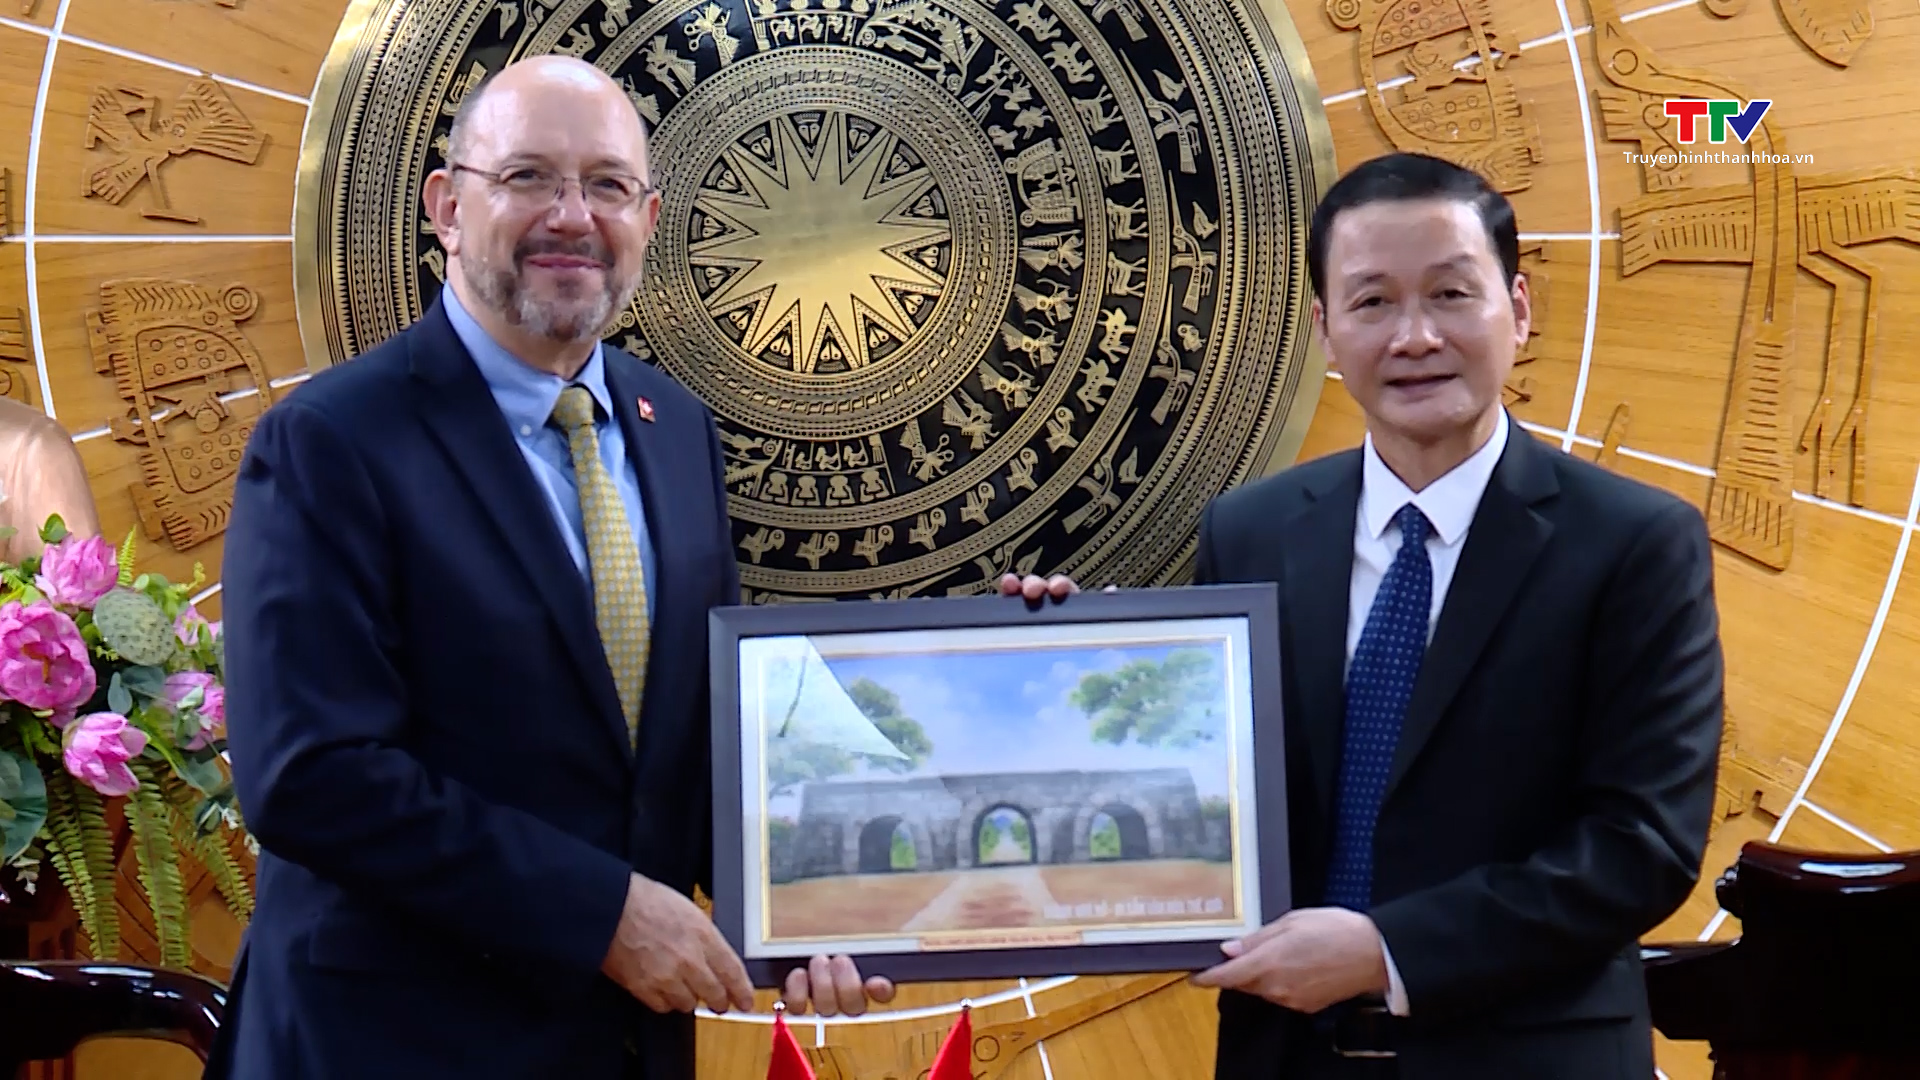 Chủ tịch Ủy ban Nhân dân tỉnh Đỗ Minh Tuấn tiếp xã giao Đại sứ đặc mệnh toàn quyền Nhà nước Thụy Sỹ tại Việt Nam- Ảnh 5.